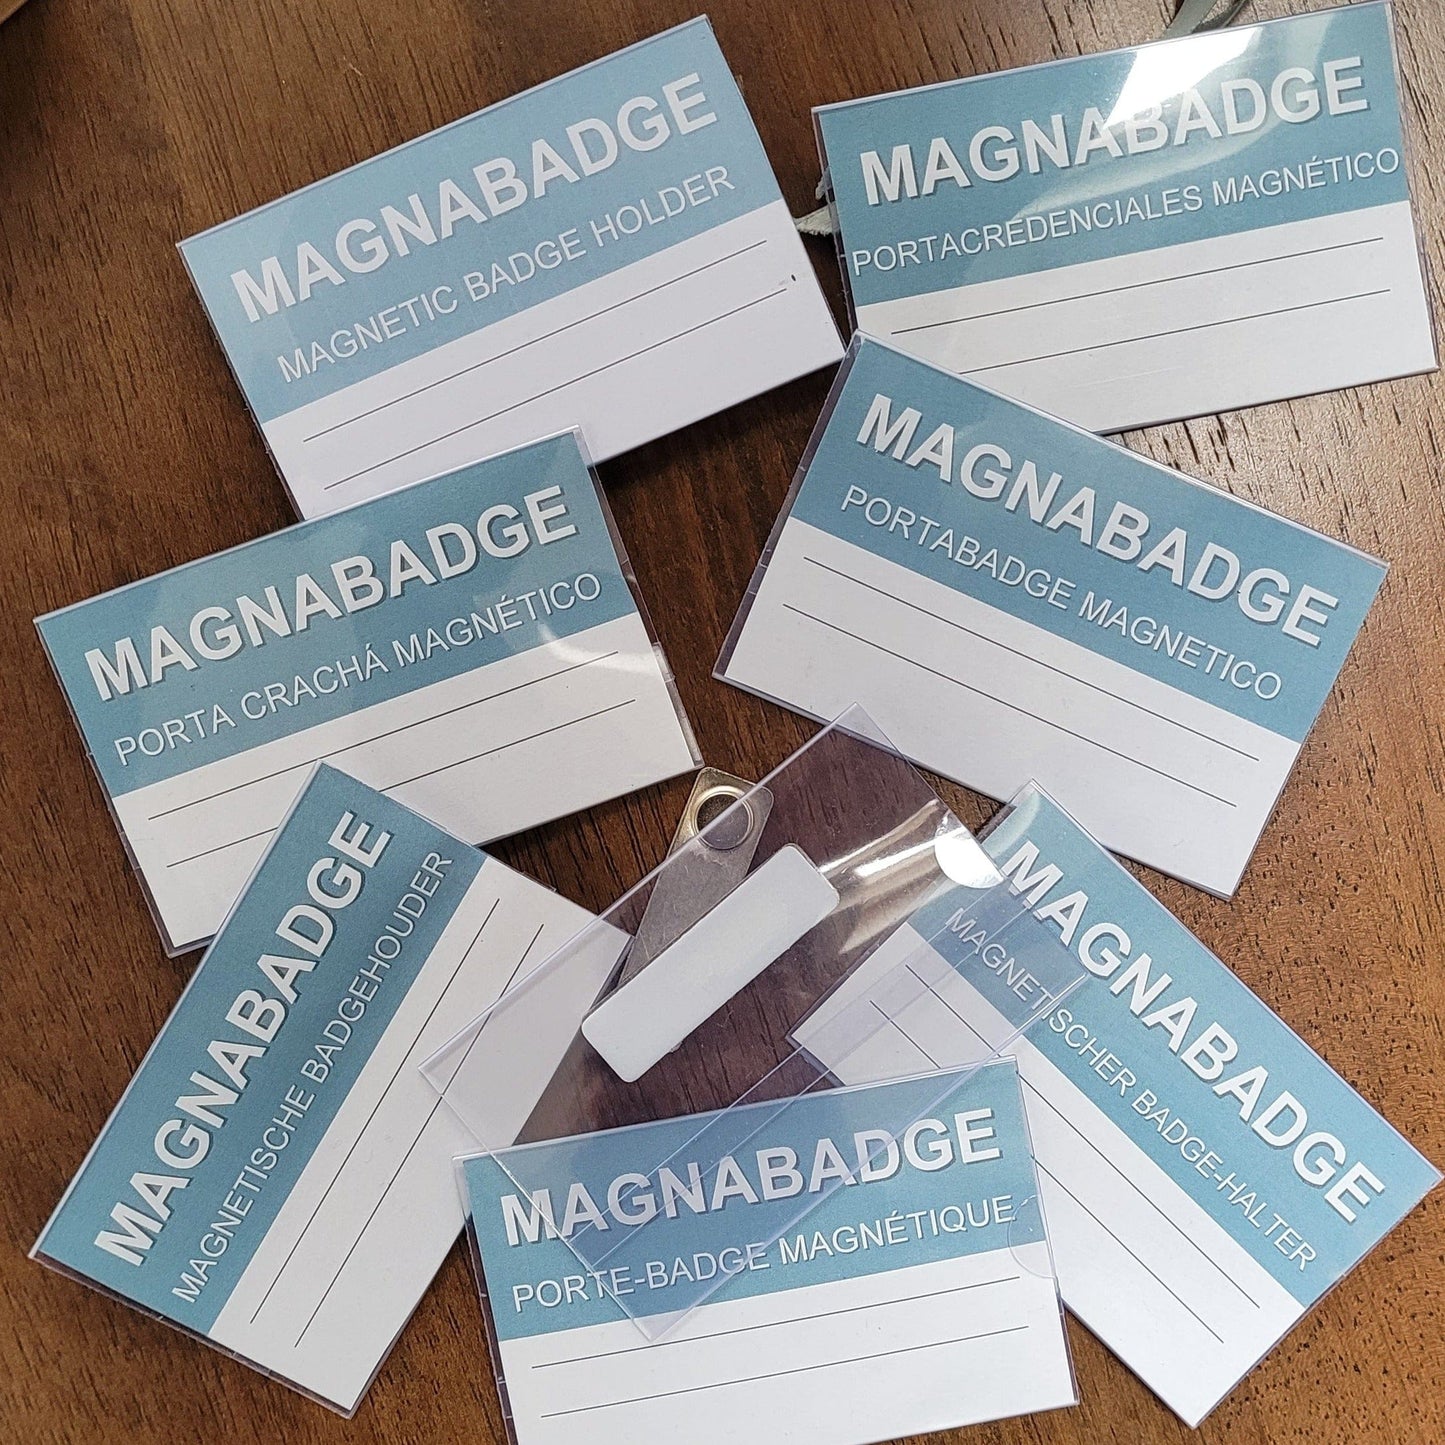 MagnaBadge™ Titular de la insignia 